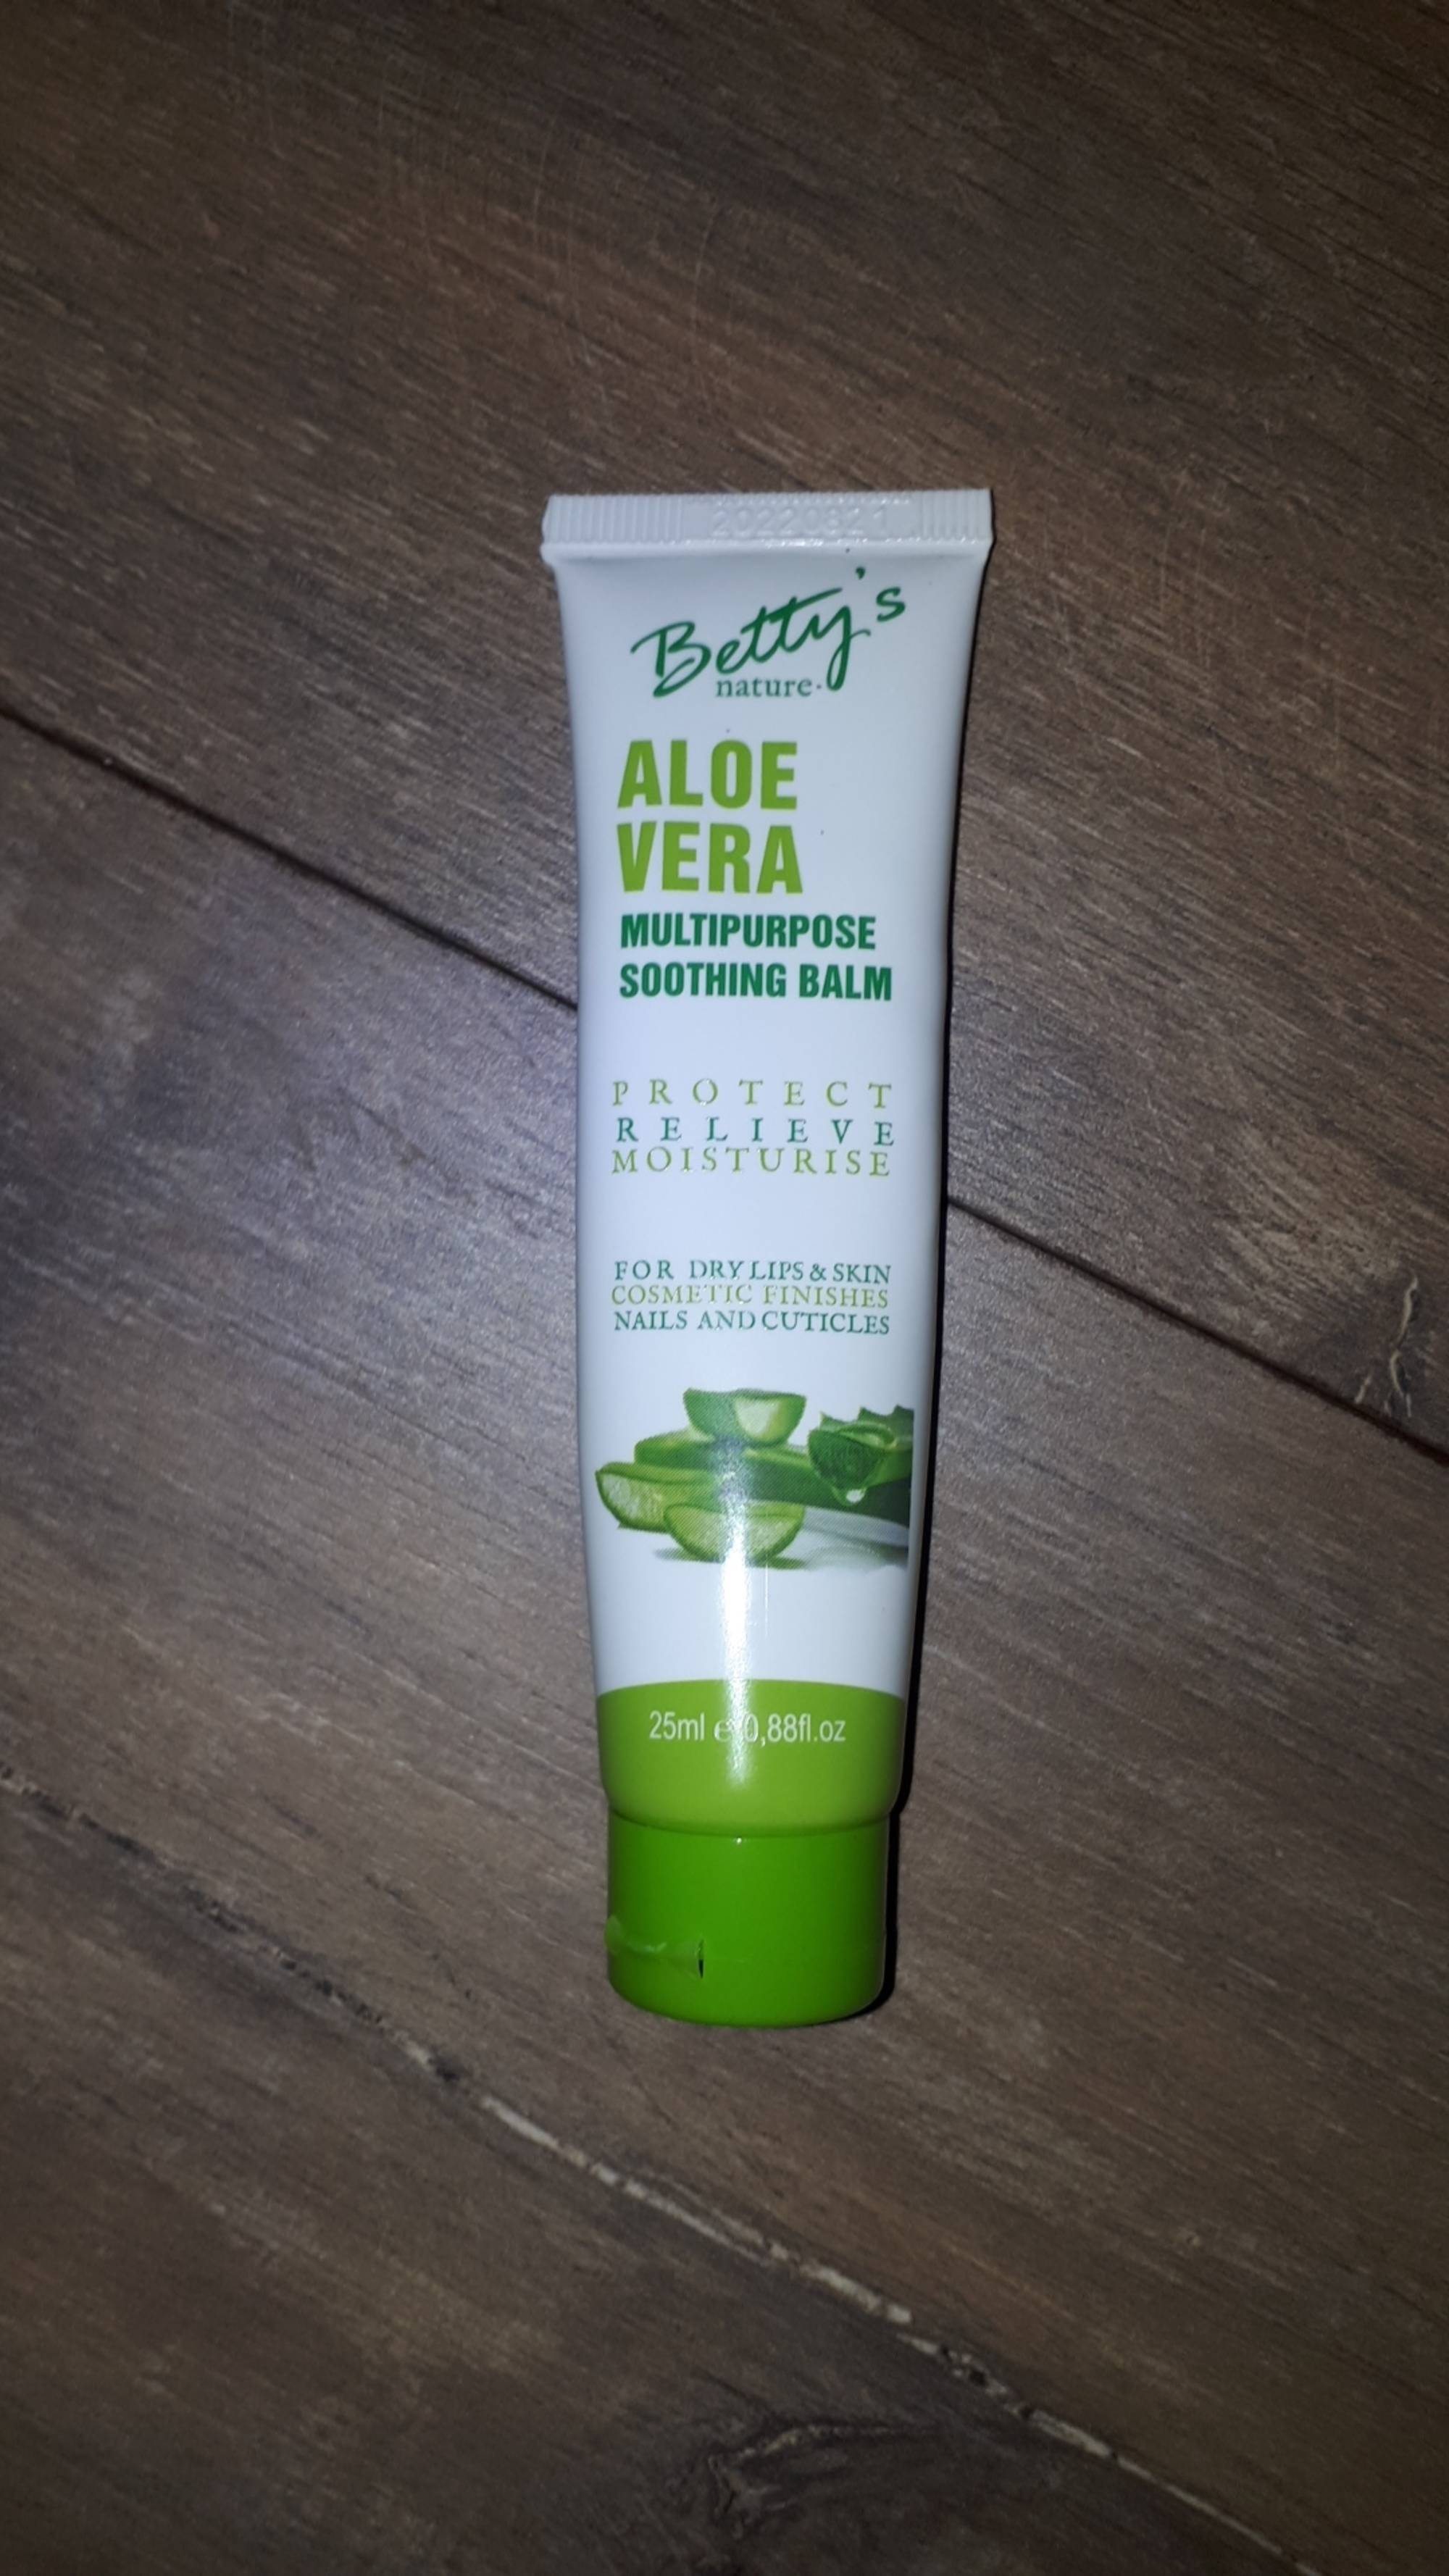 BETTY'S NATURE - Aloe vera - Multipurpose soothing balm